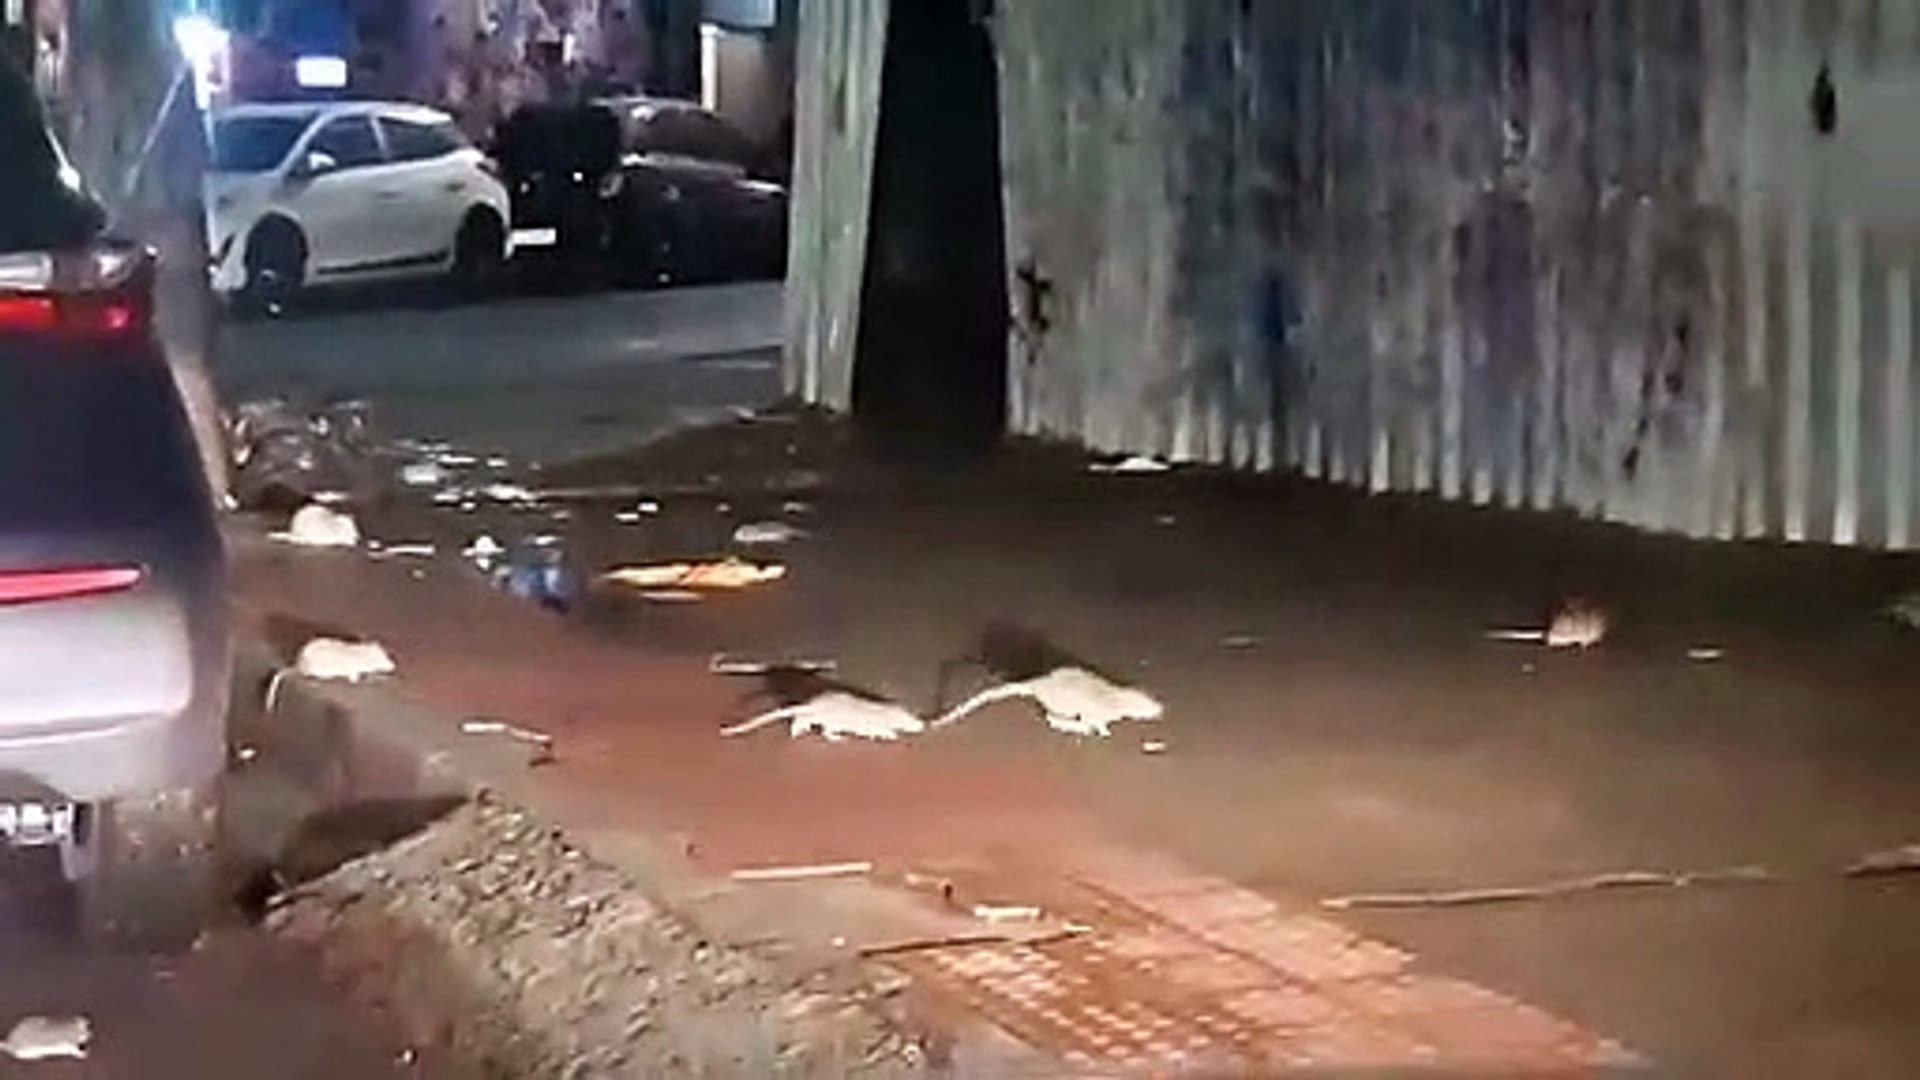 Vídeos mostram ratos gigantes passando no meio das pessoas na Rua da Lama